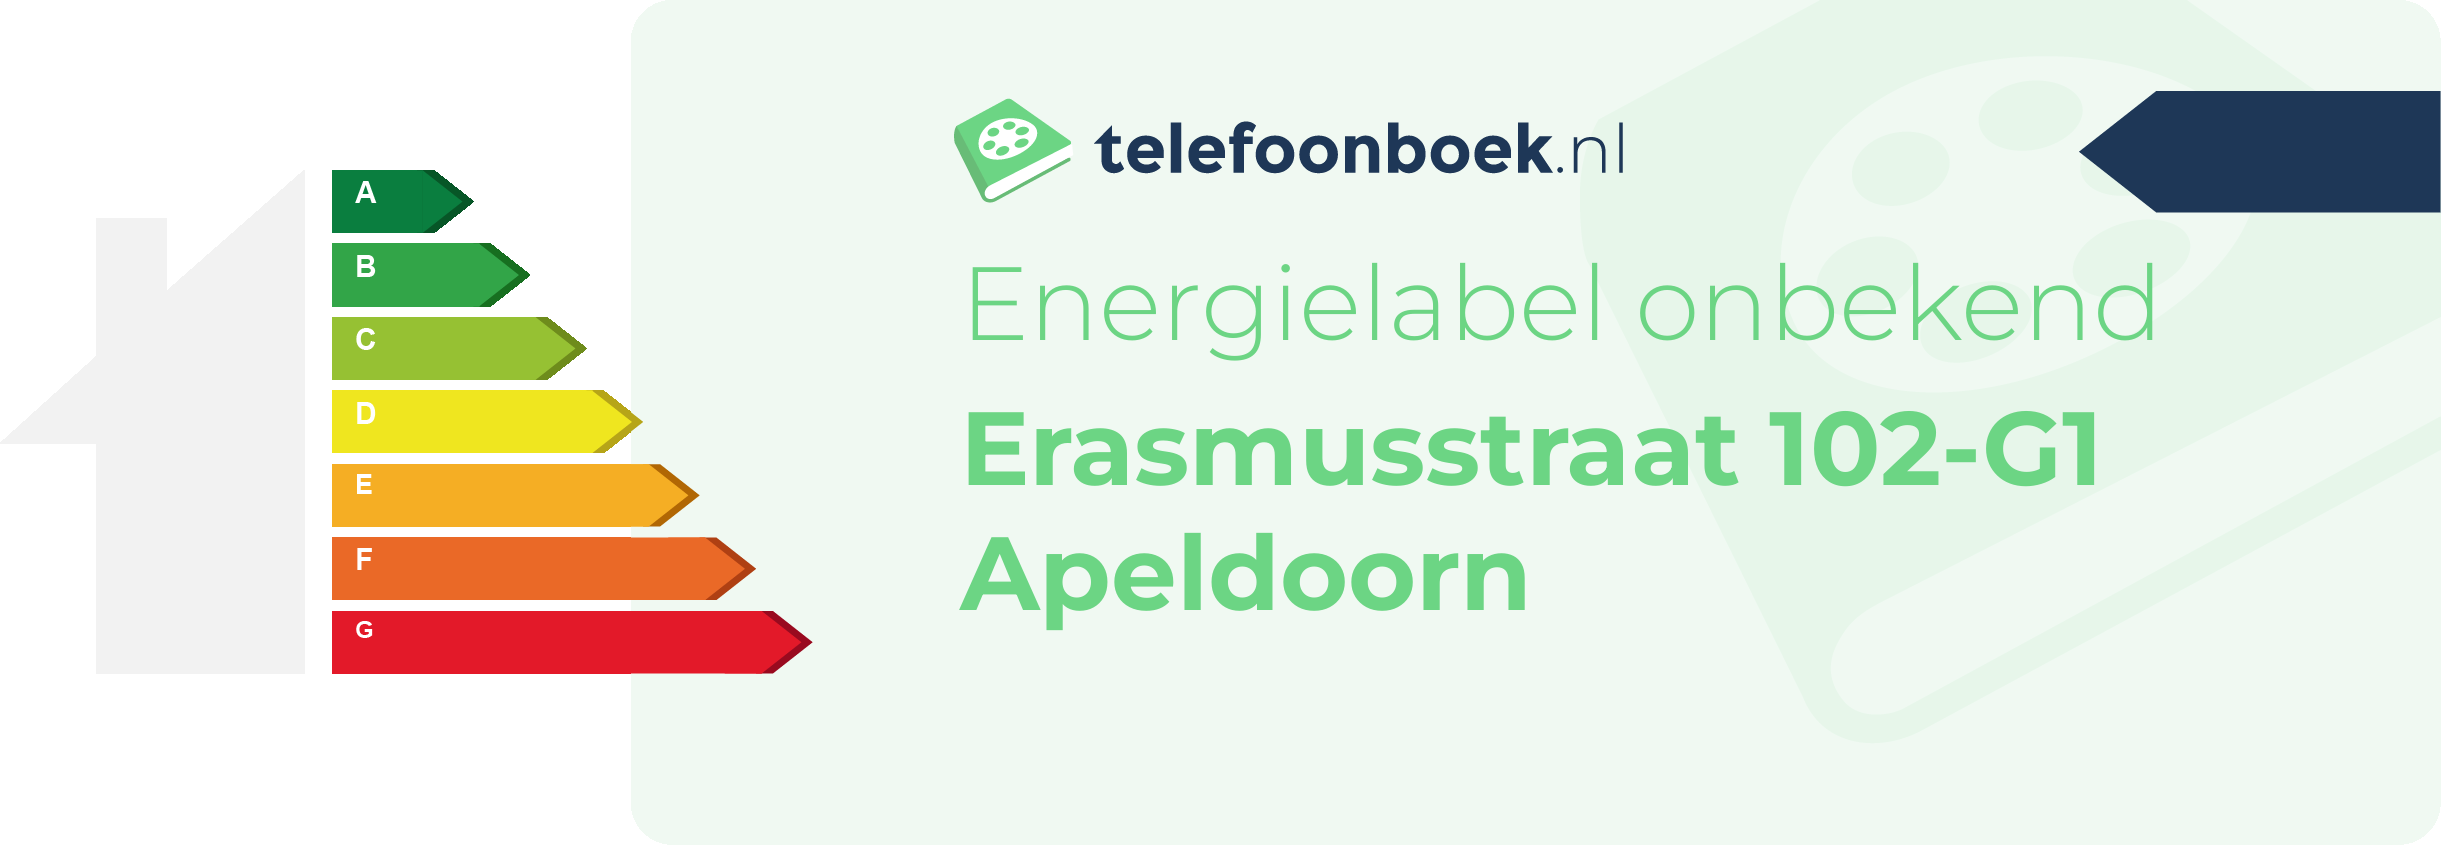 Energielabel Erasmusstraat 102-G1 Apeldoorn